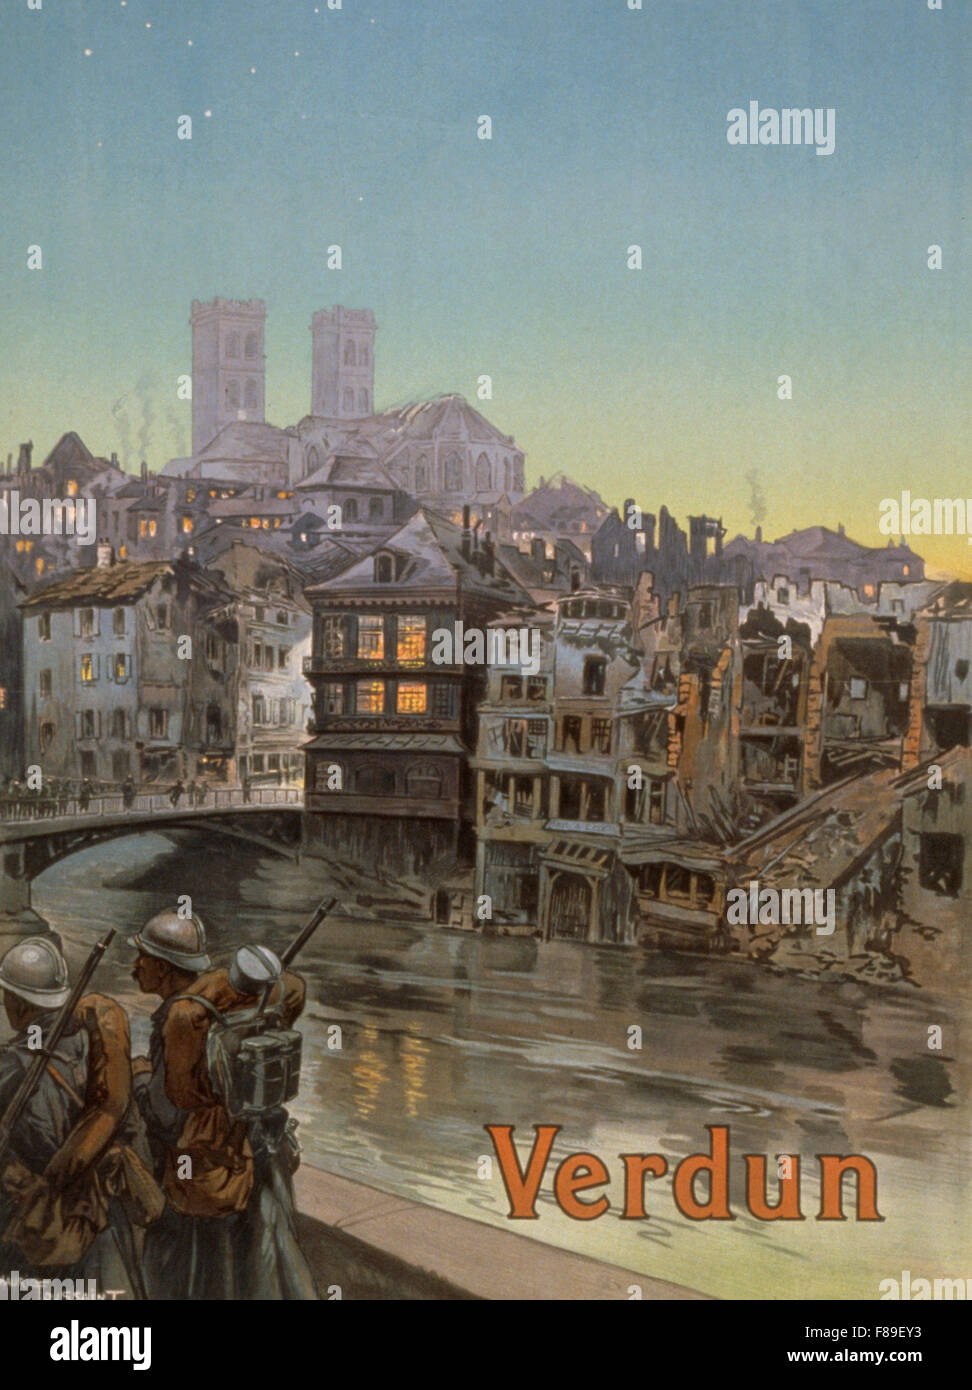 Verdun war poster, Battle of Verdun, France during World War One Stock Photo